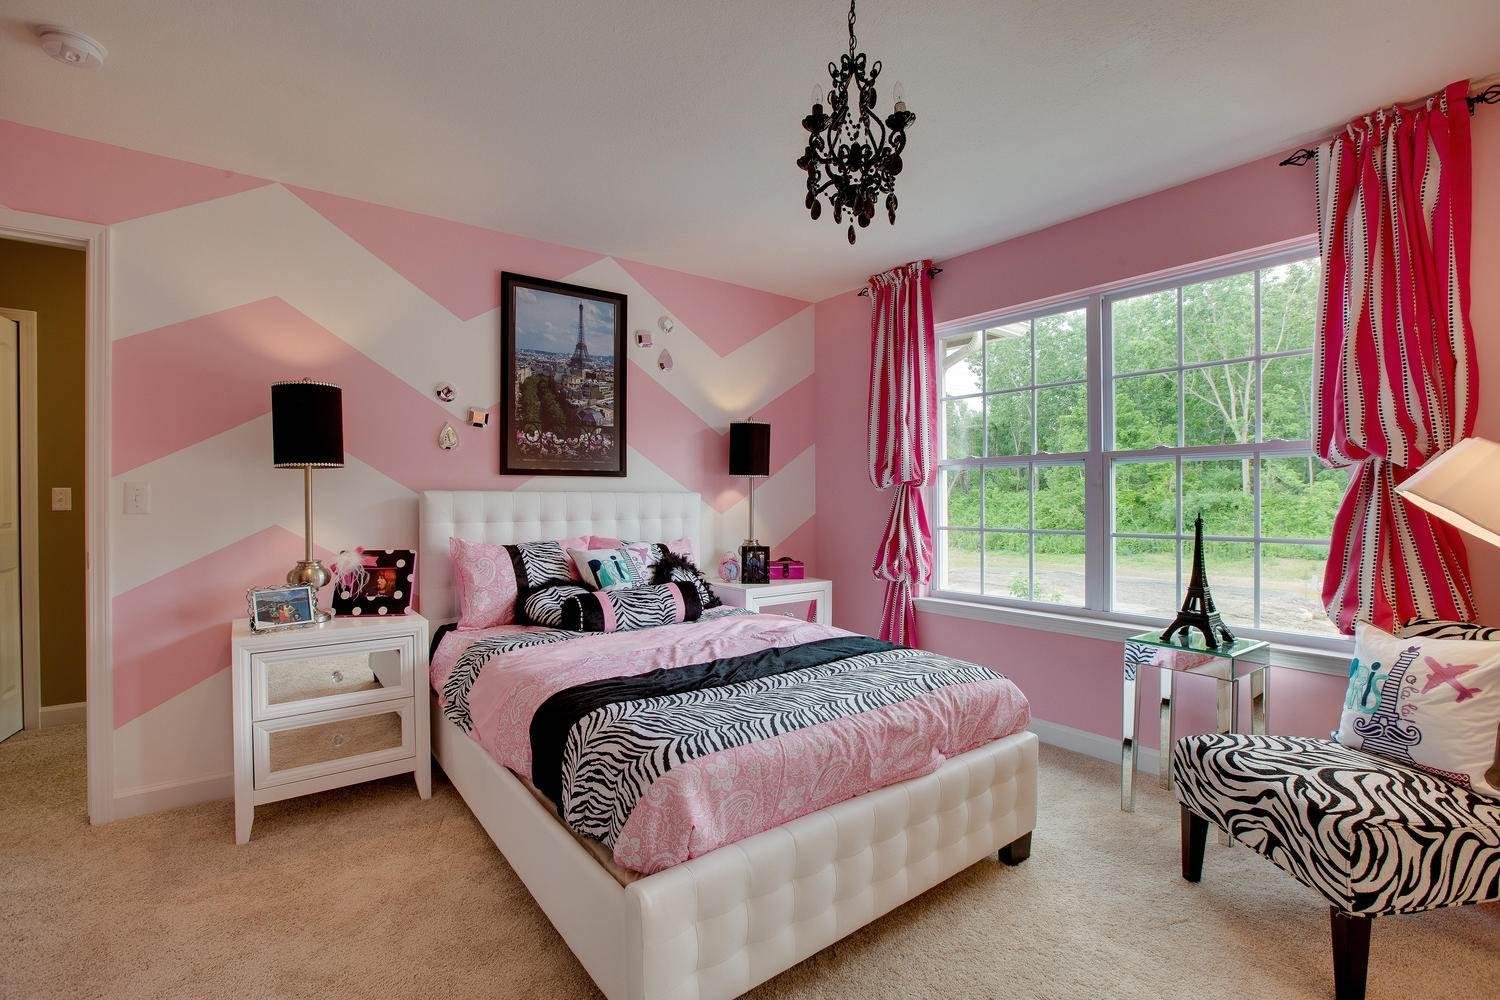 Комната в розовых тонах. Спальня в розовых тонах. Спальня в розовом цвете. Розовые стены в спальне. Розовые стены в интерьере.